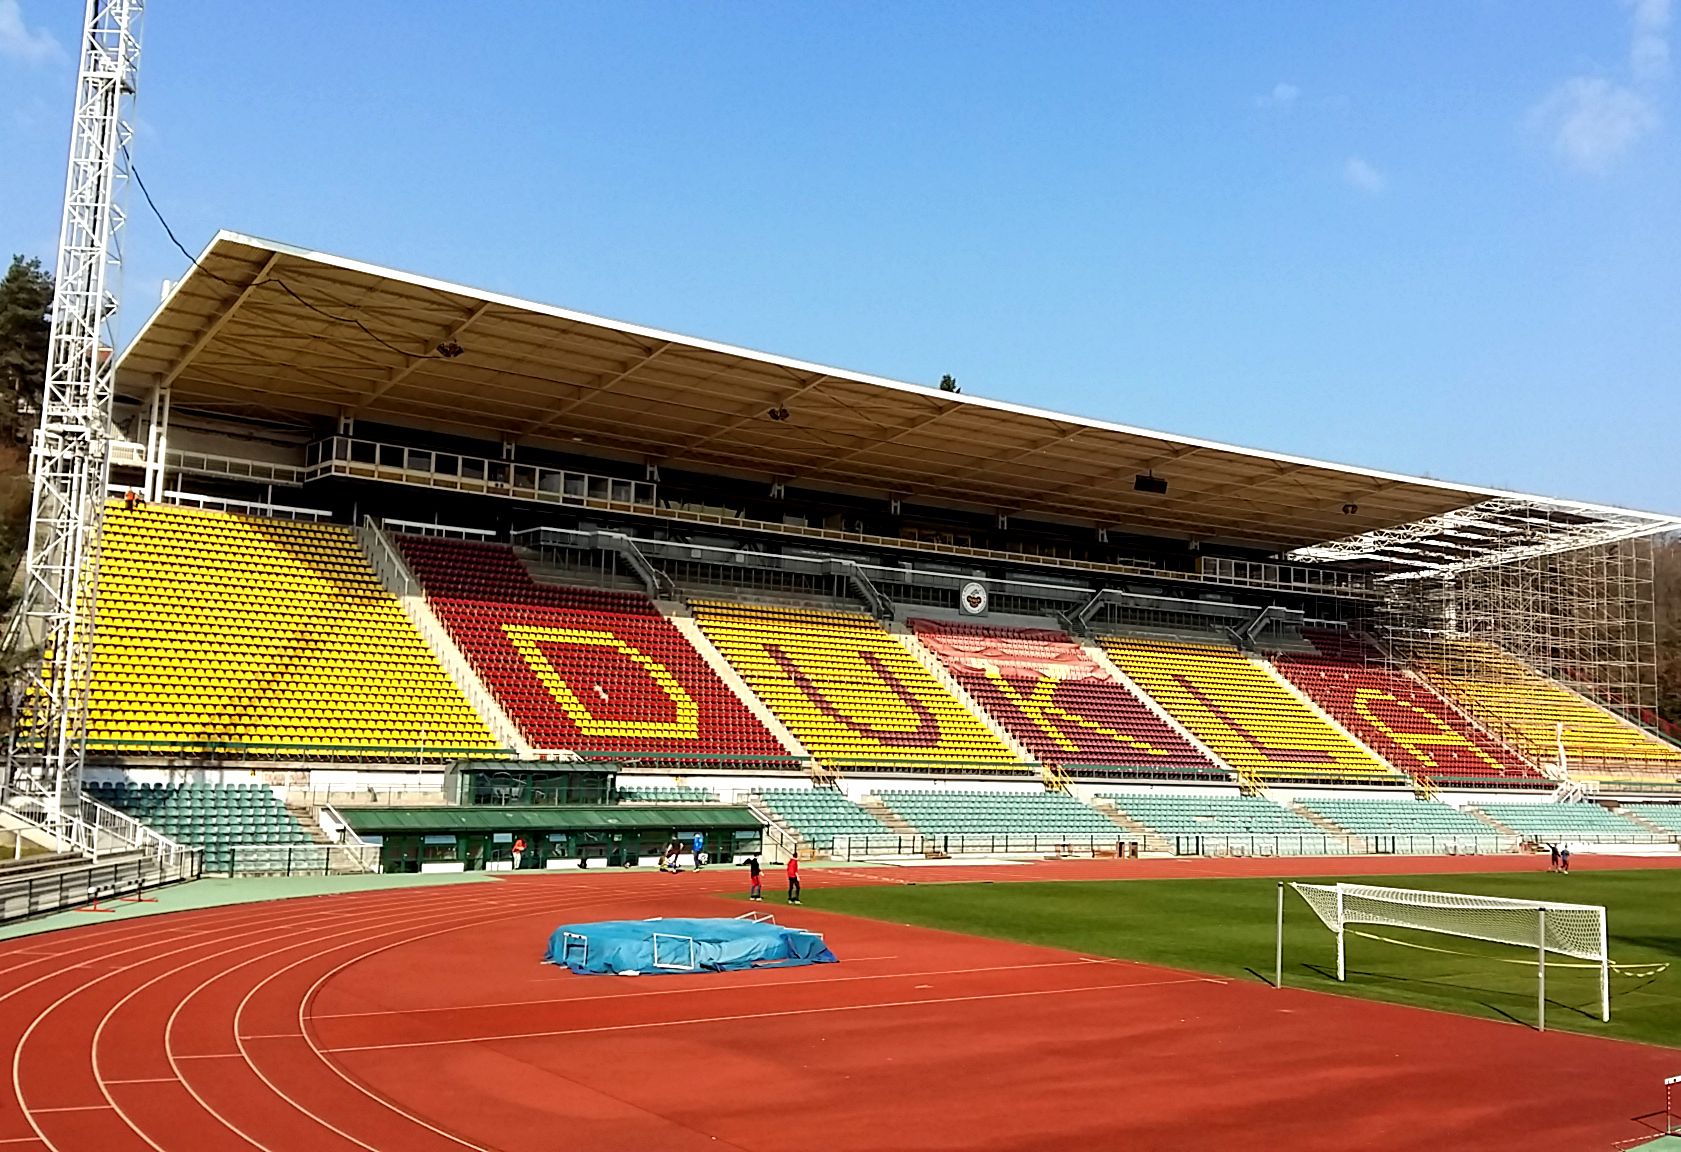 Stadion Juliska rekonstrukce tribuny - Pozemní stavby